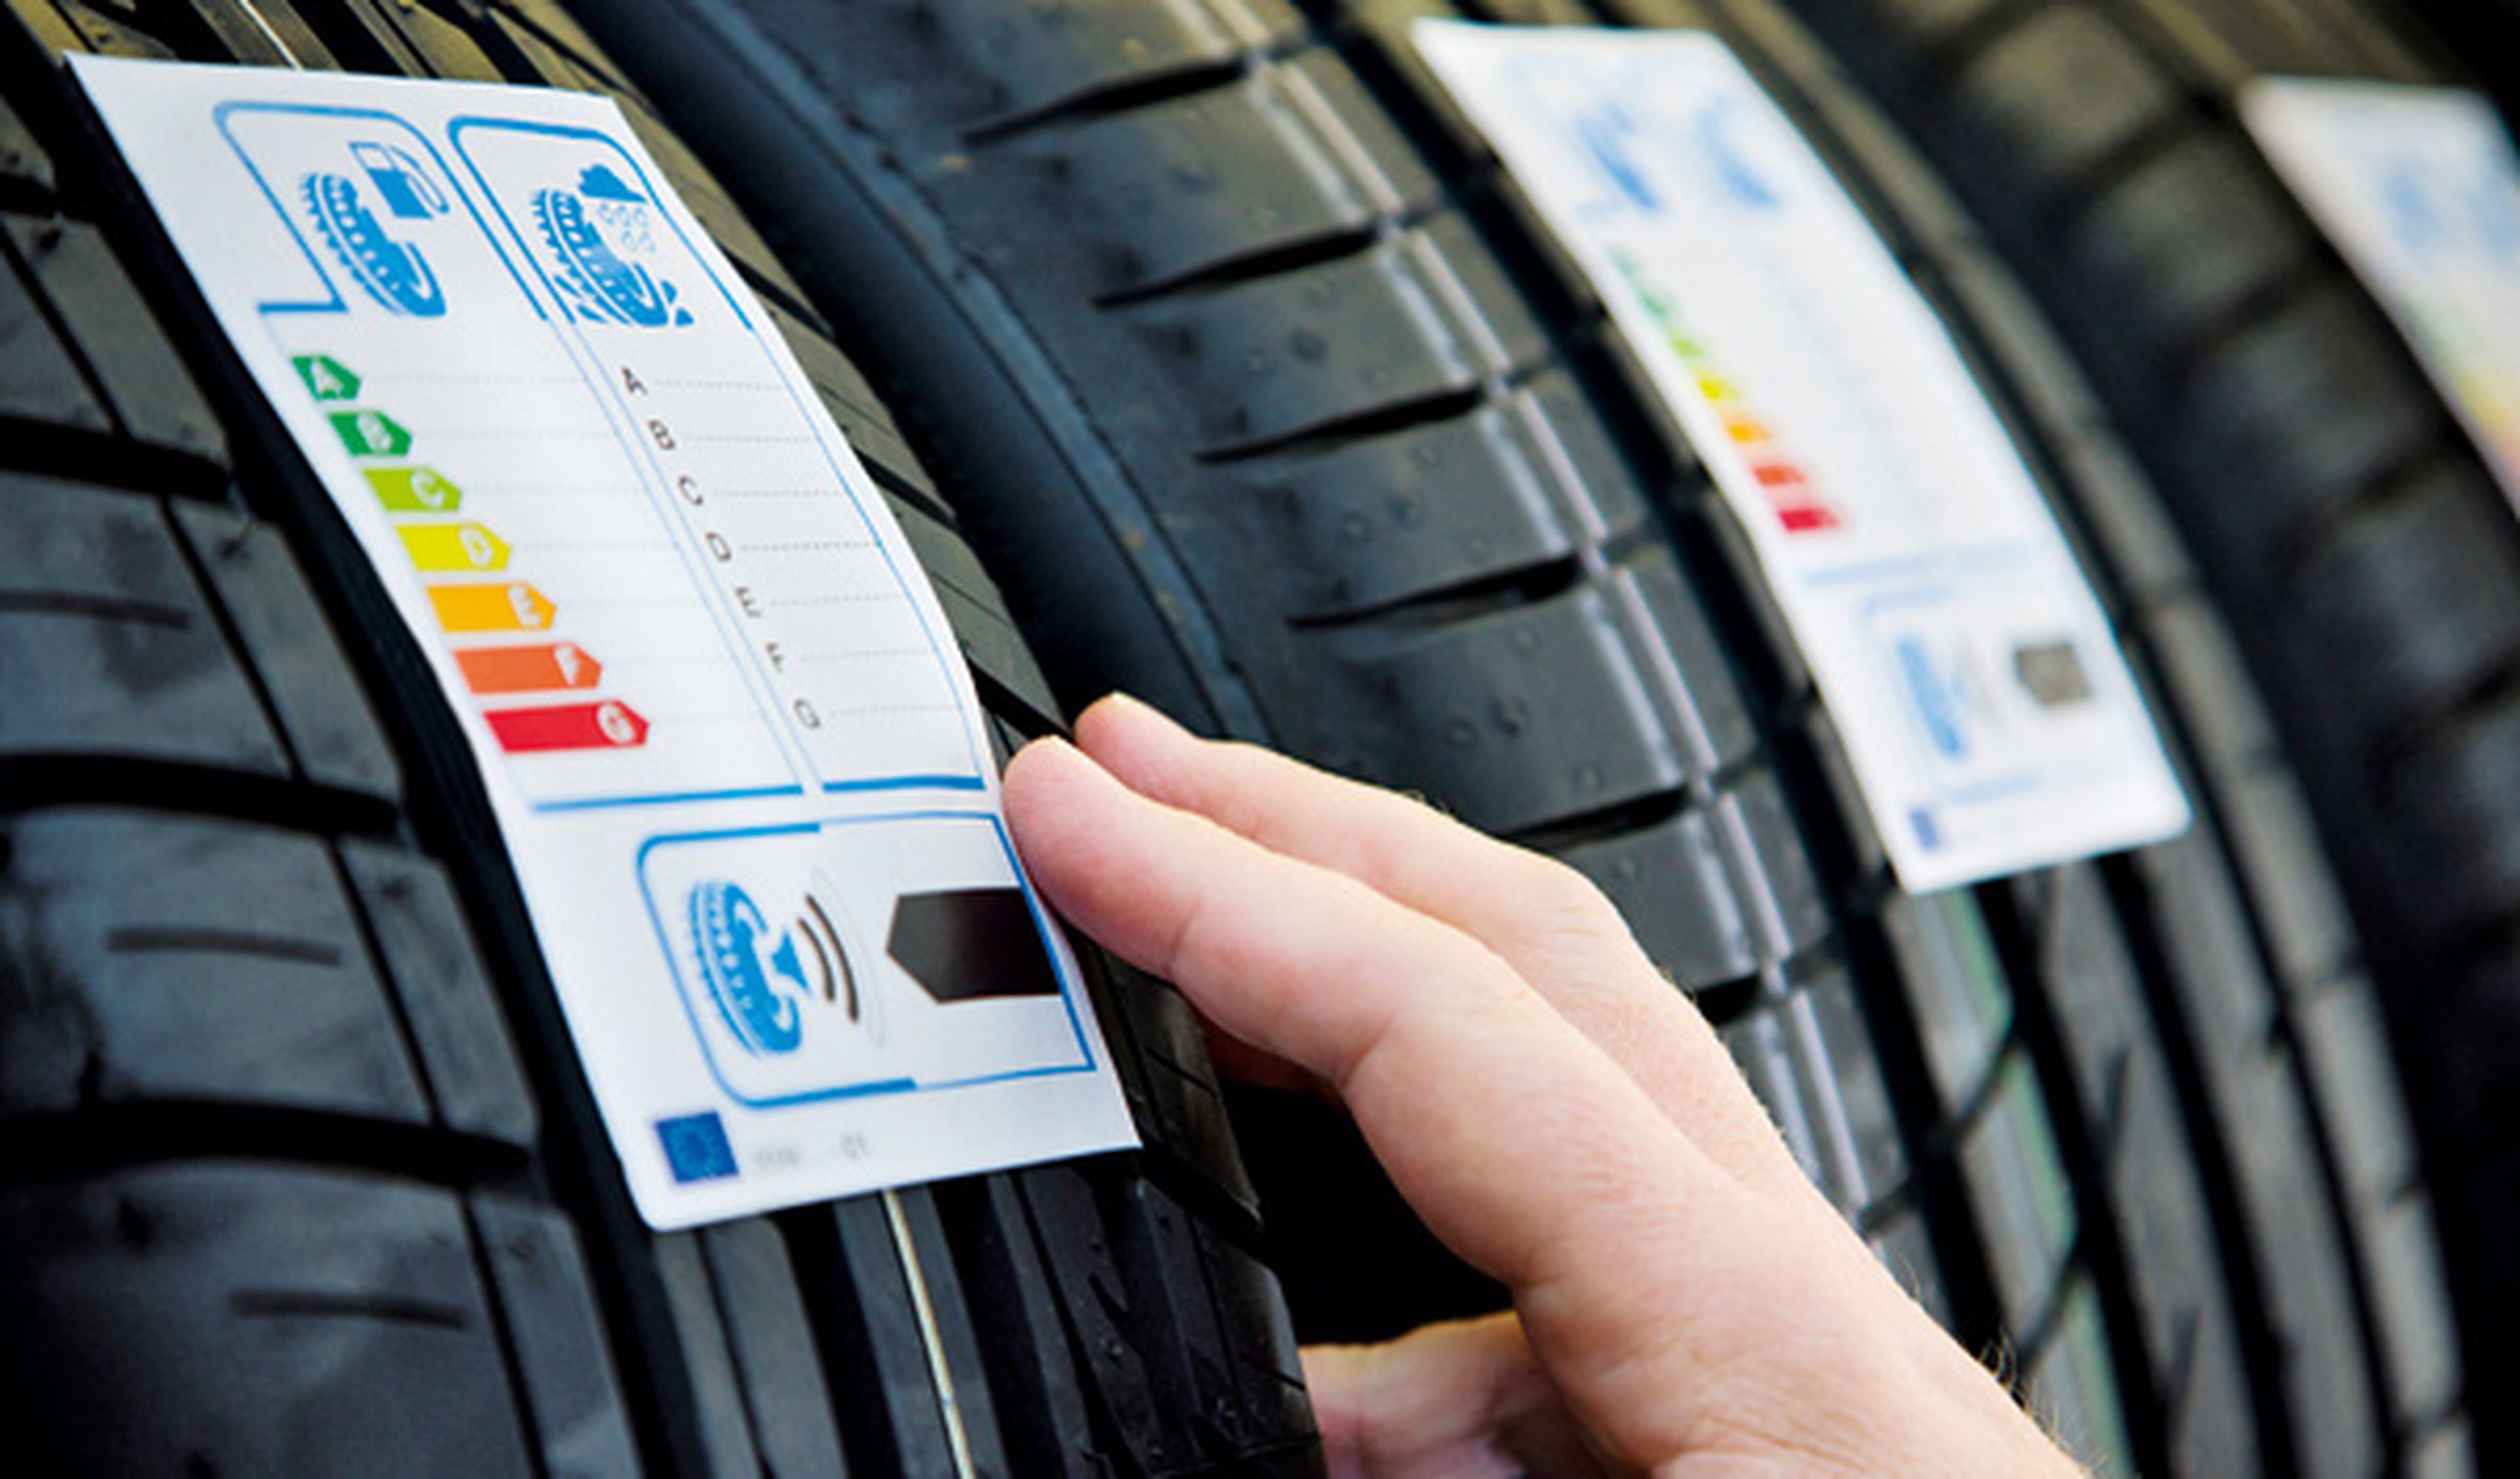 ¿Sabes leer la etiqueta europea de los neumáticos?